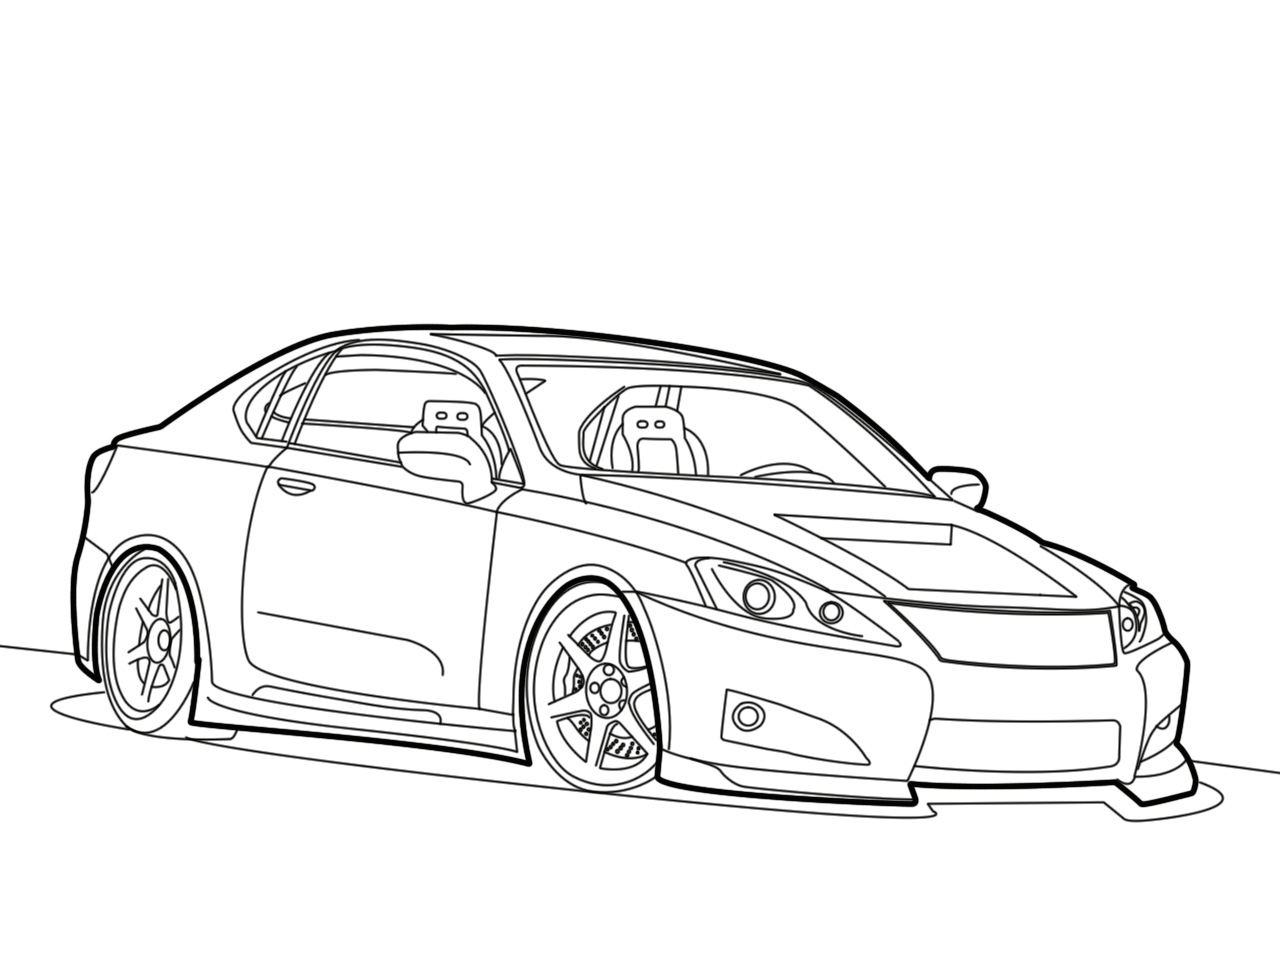 Lexus Image Drawing